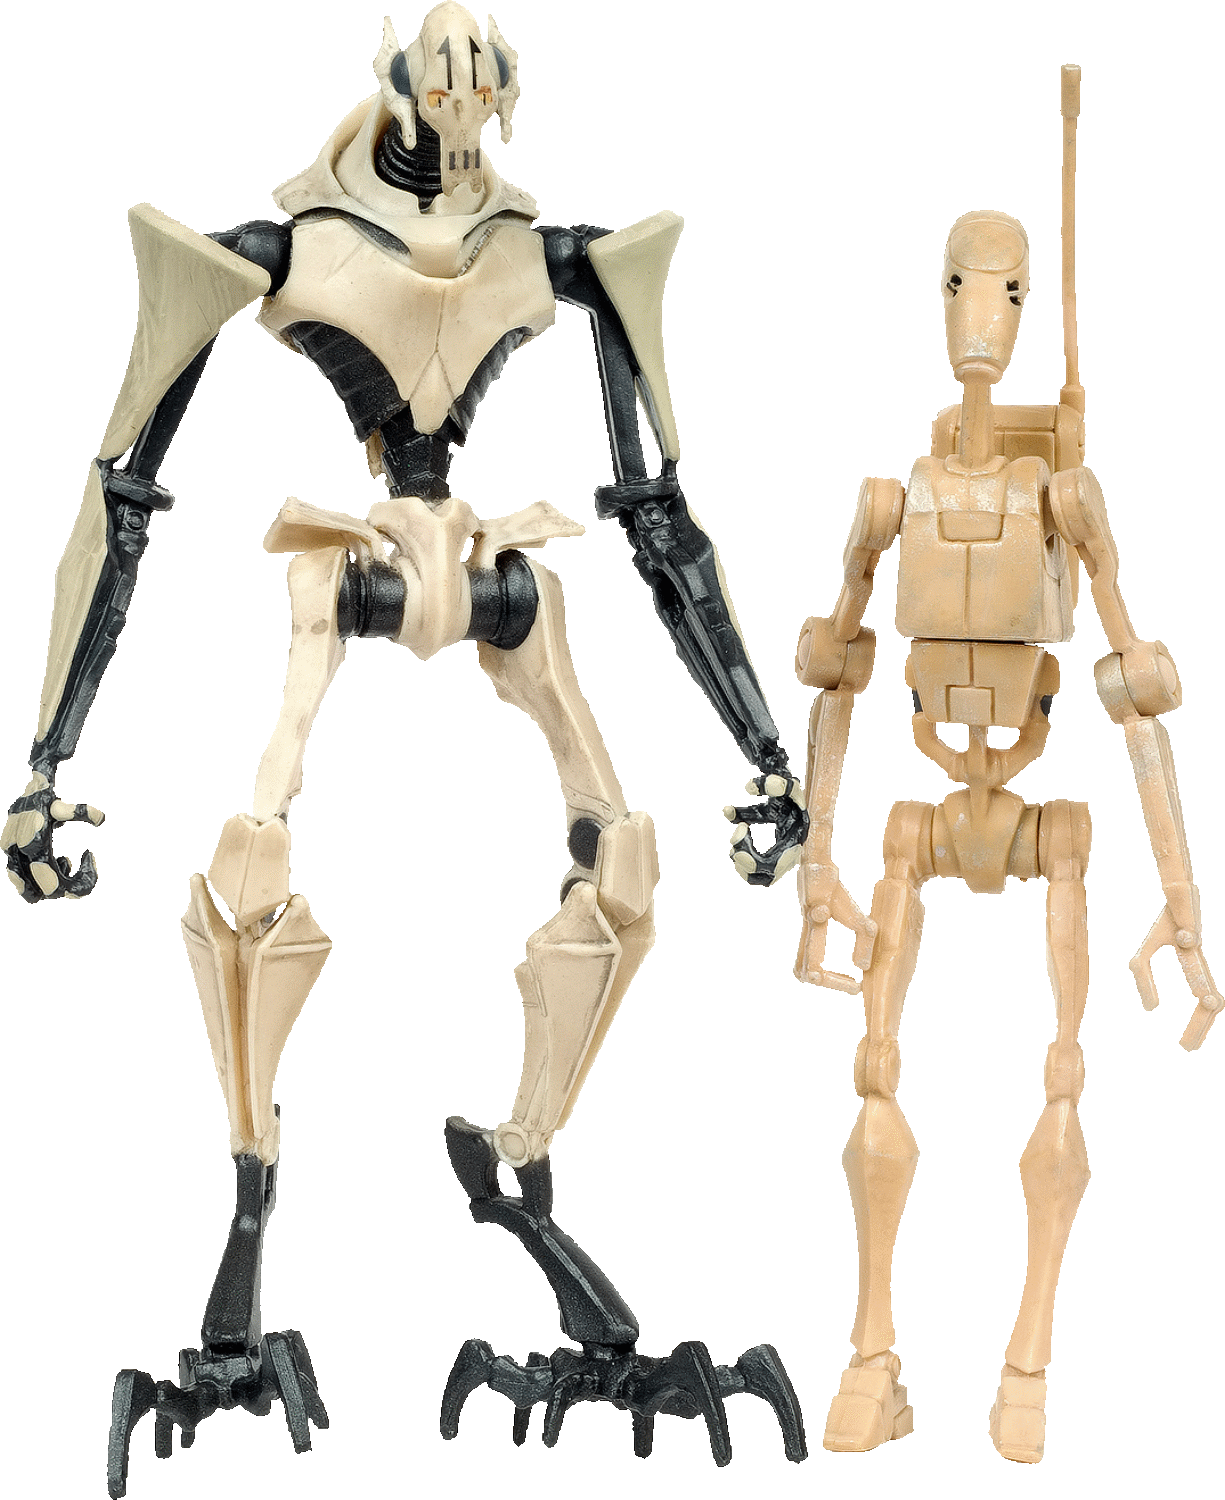 general grievous droids